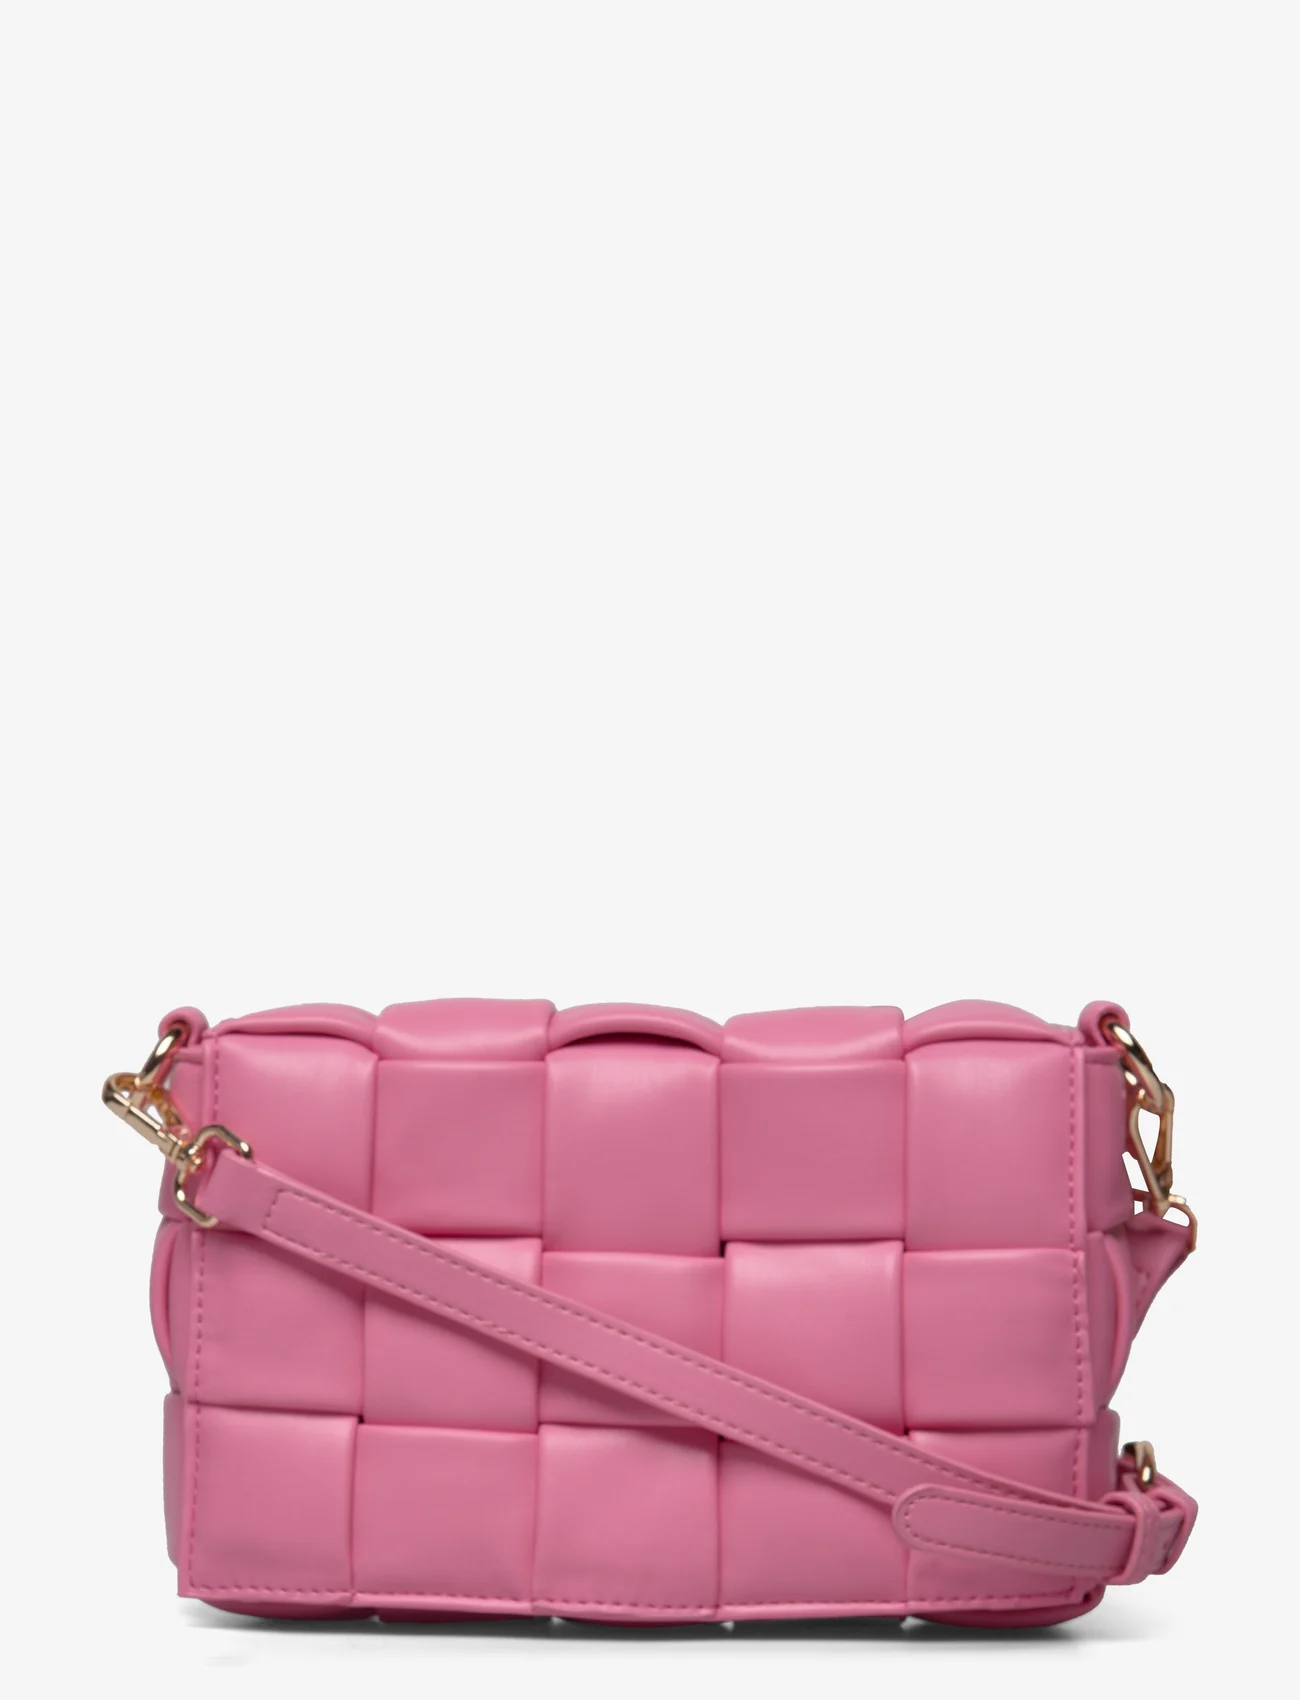 Noella - Brick Bag - skandinaviškas stilius - bubble pink - 0